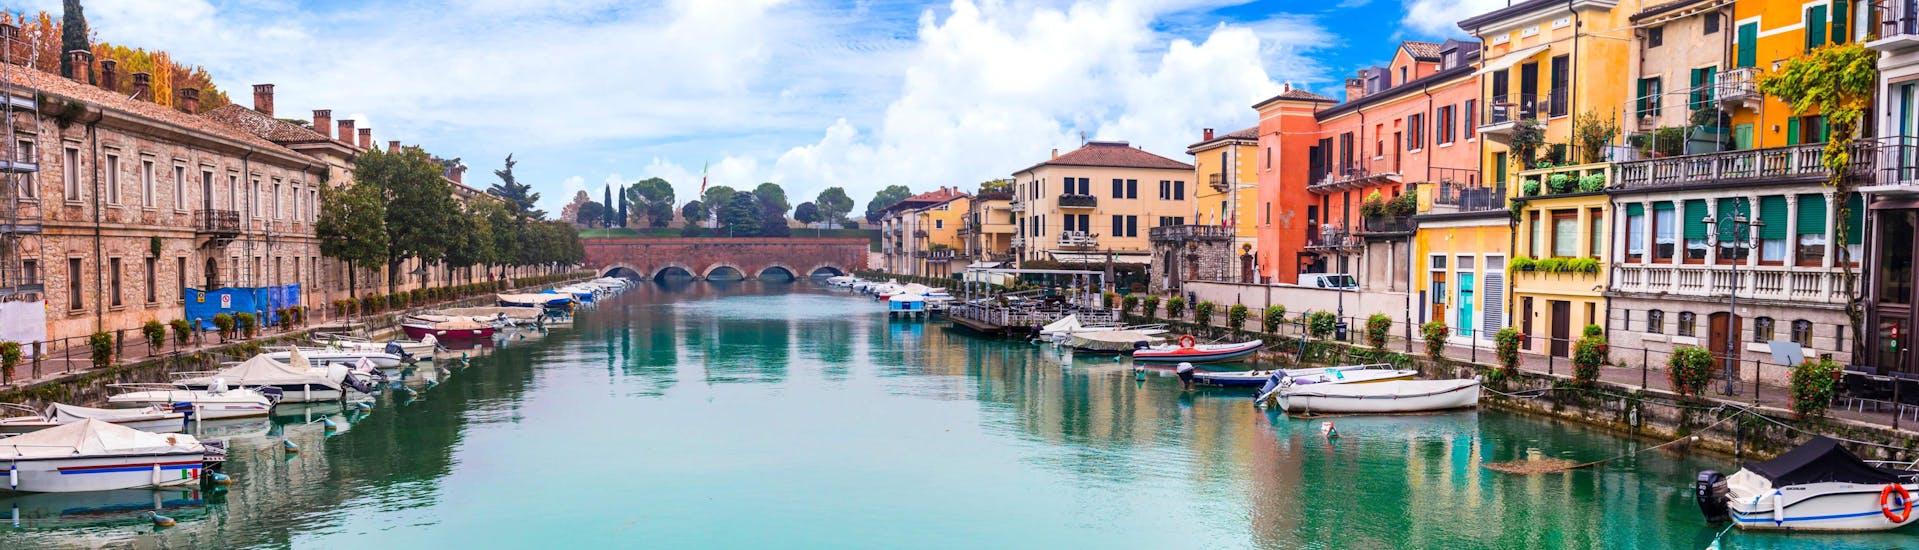 Die Stadt Peschiera del Garda am Gardasee in Italien.